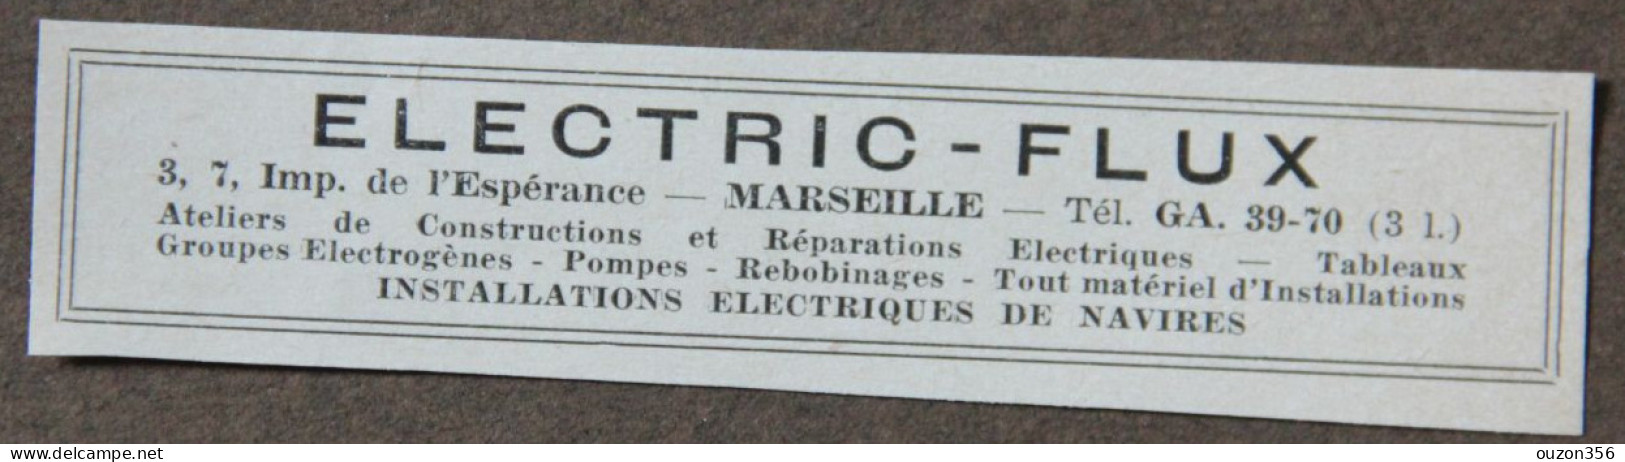 Publicité : ELECTRIC-FLUX, Electricité, Installations électriques De Navires, Marseille, 1951 - Advertising